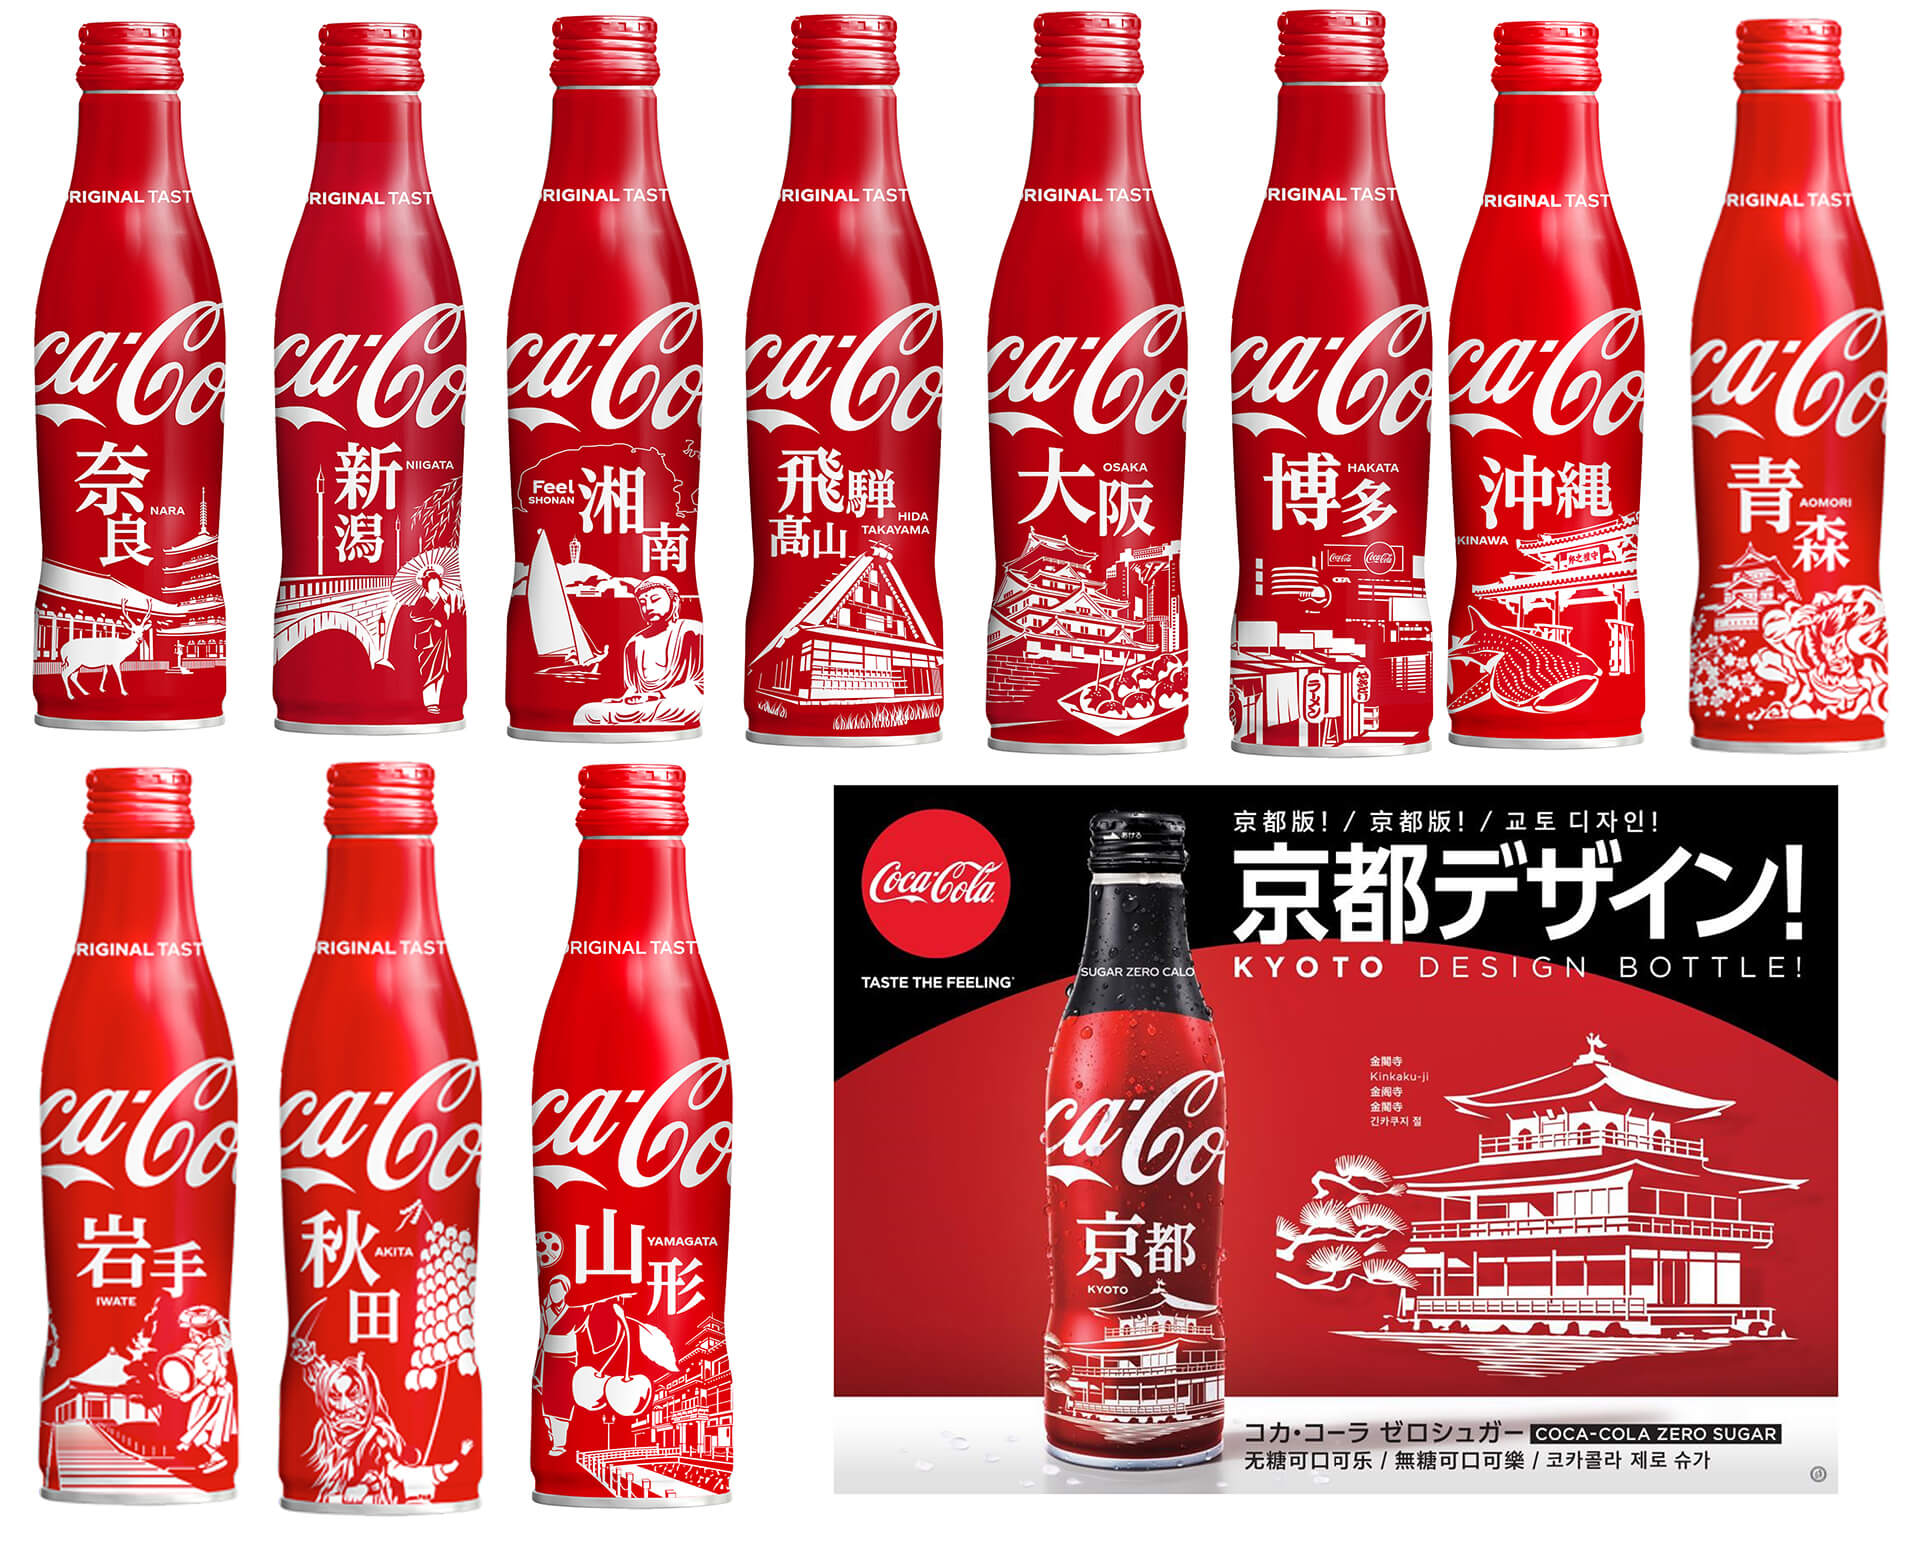 コカ・コーラ 限定スリムボトル、続々拡大中! | 関東のお出かけ情報 